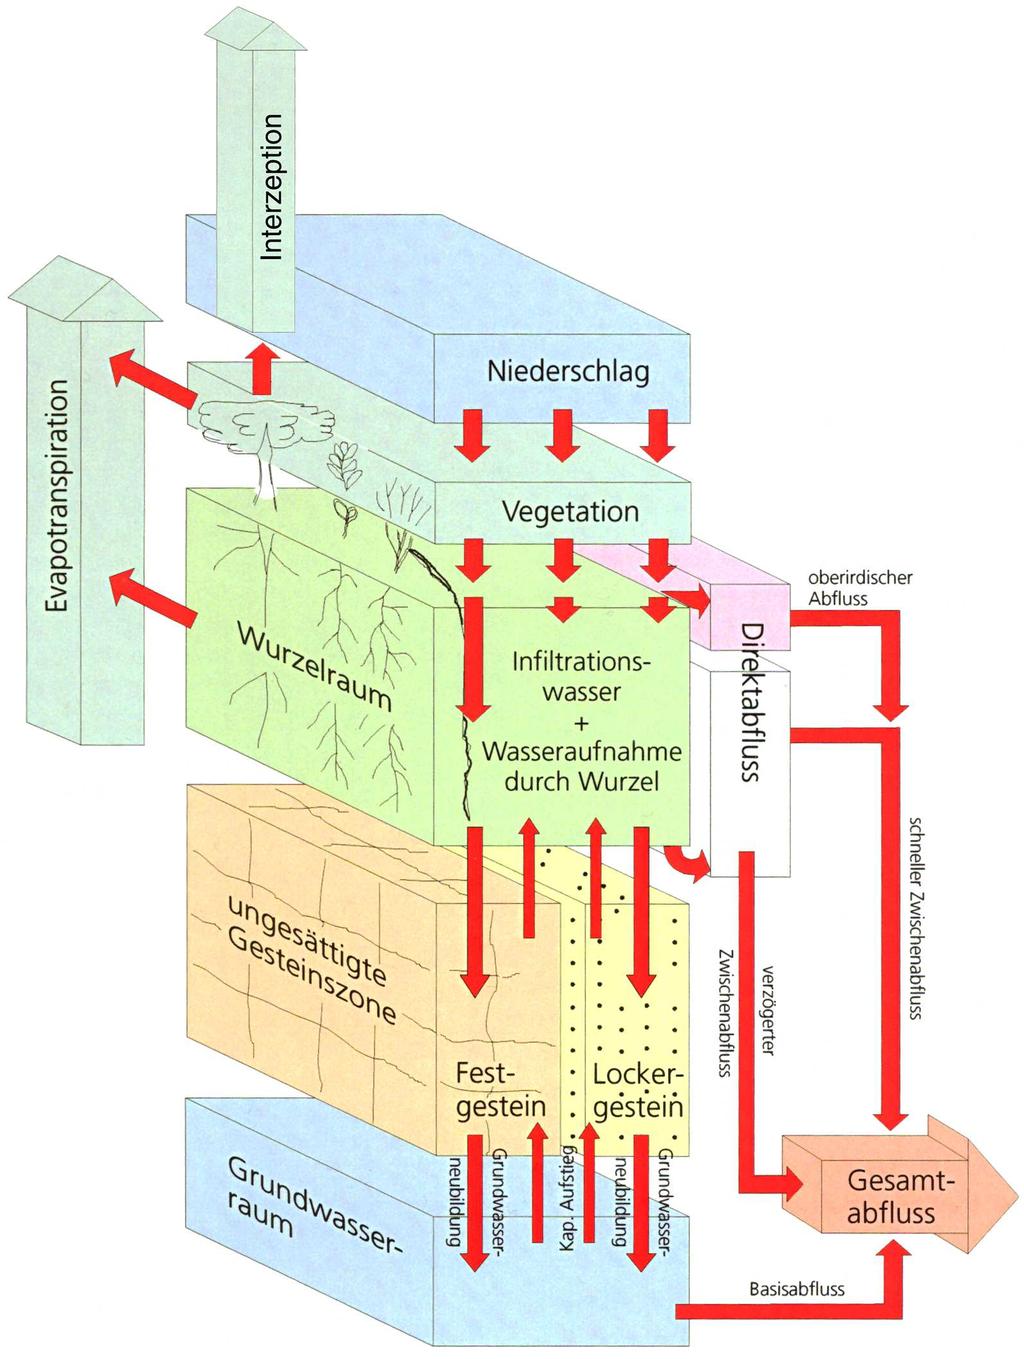 empirische Einschicht-Bodenwasserhaushaltsmodell (BWHM) nach GROSSMANN (1995, 1997, 1998, 2001) und DOMMERMUTH & TRAMPF (1991) mit einem